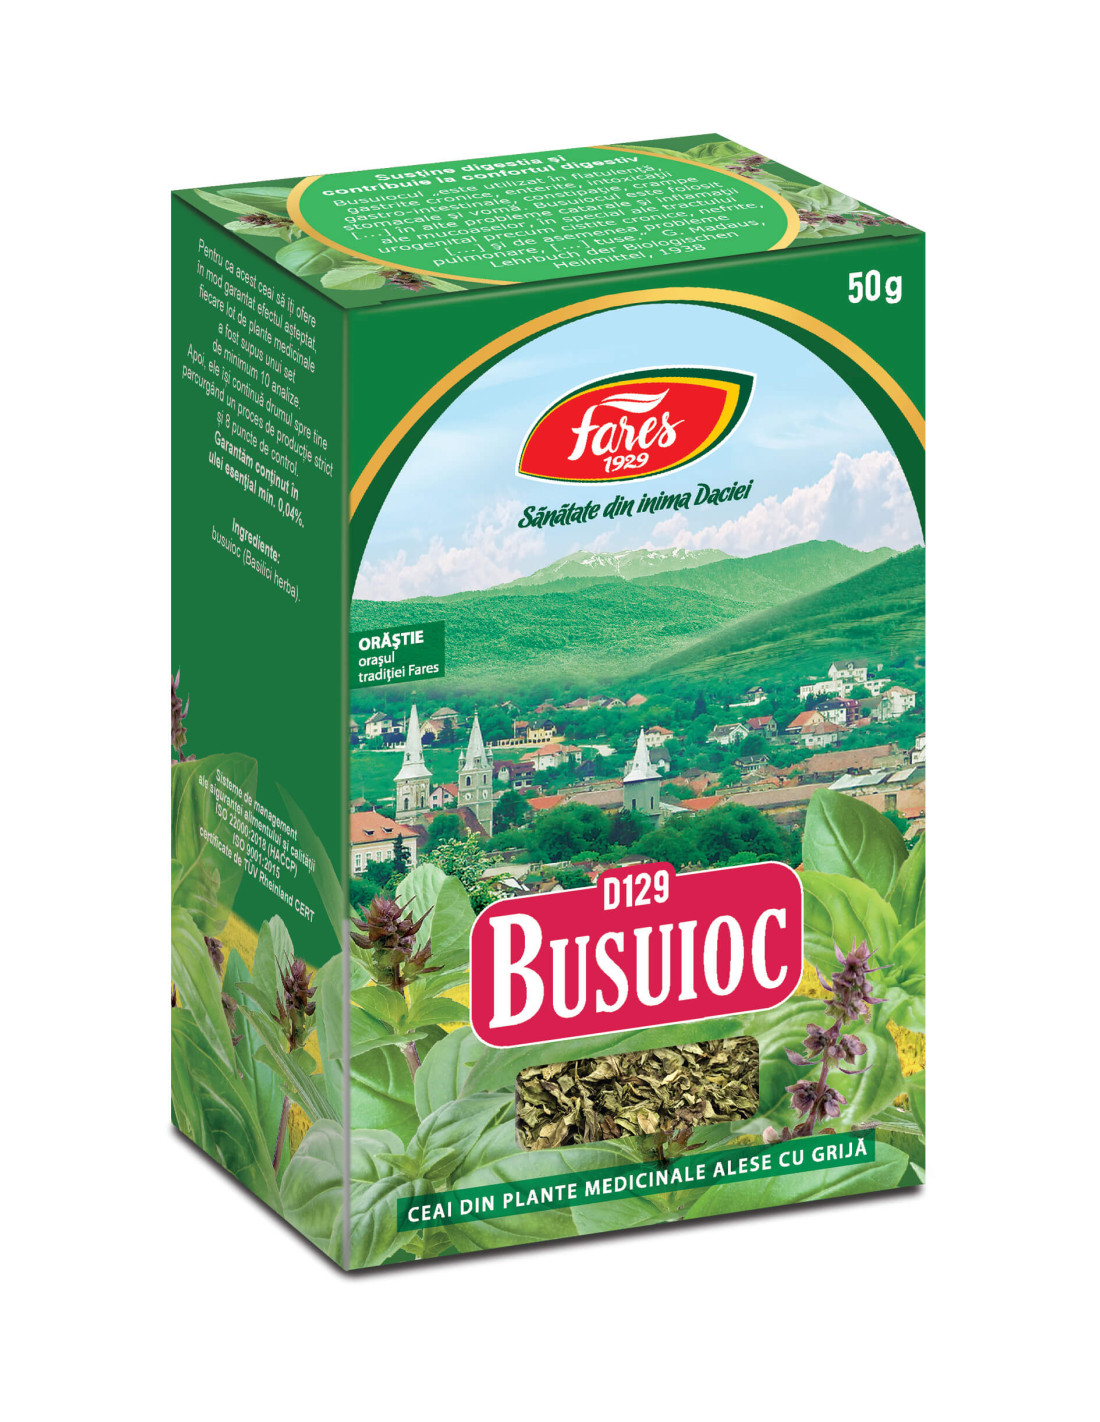 Ceaiuri - Ceai Busuioc, 50 g, Fares, farmacieieftina.ro